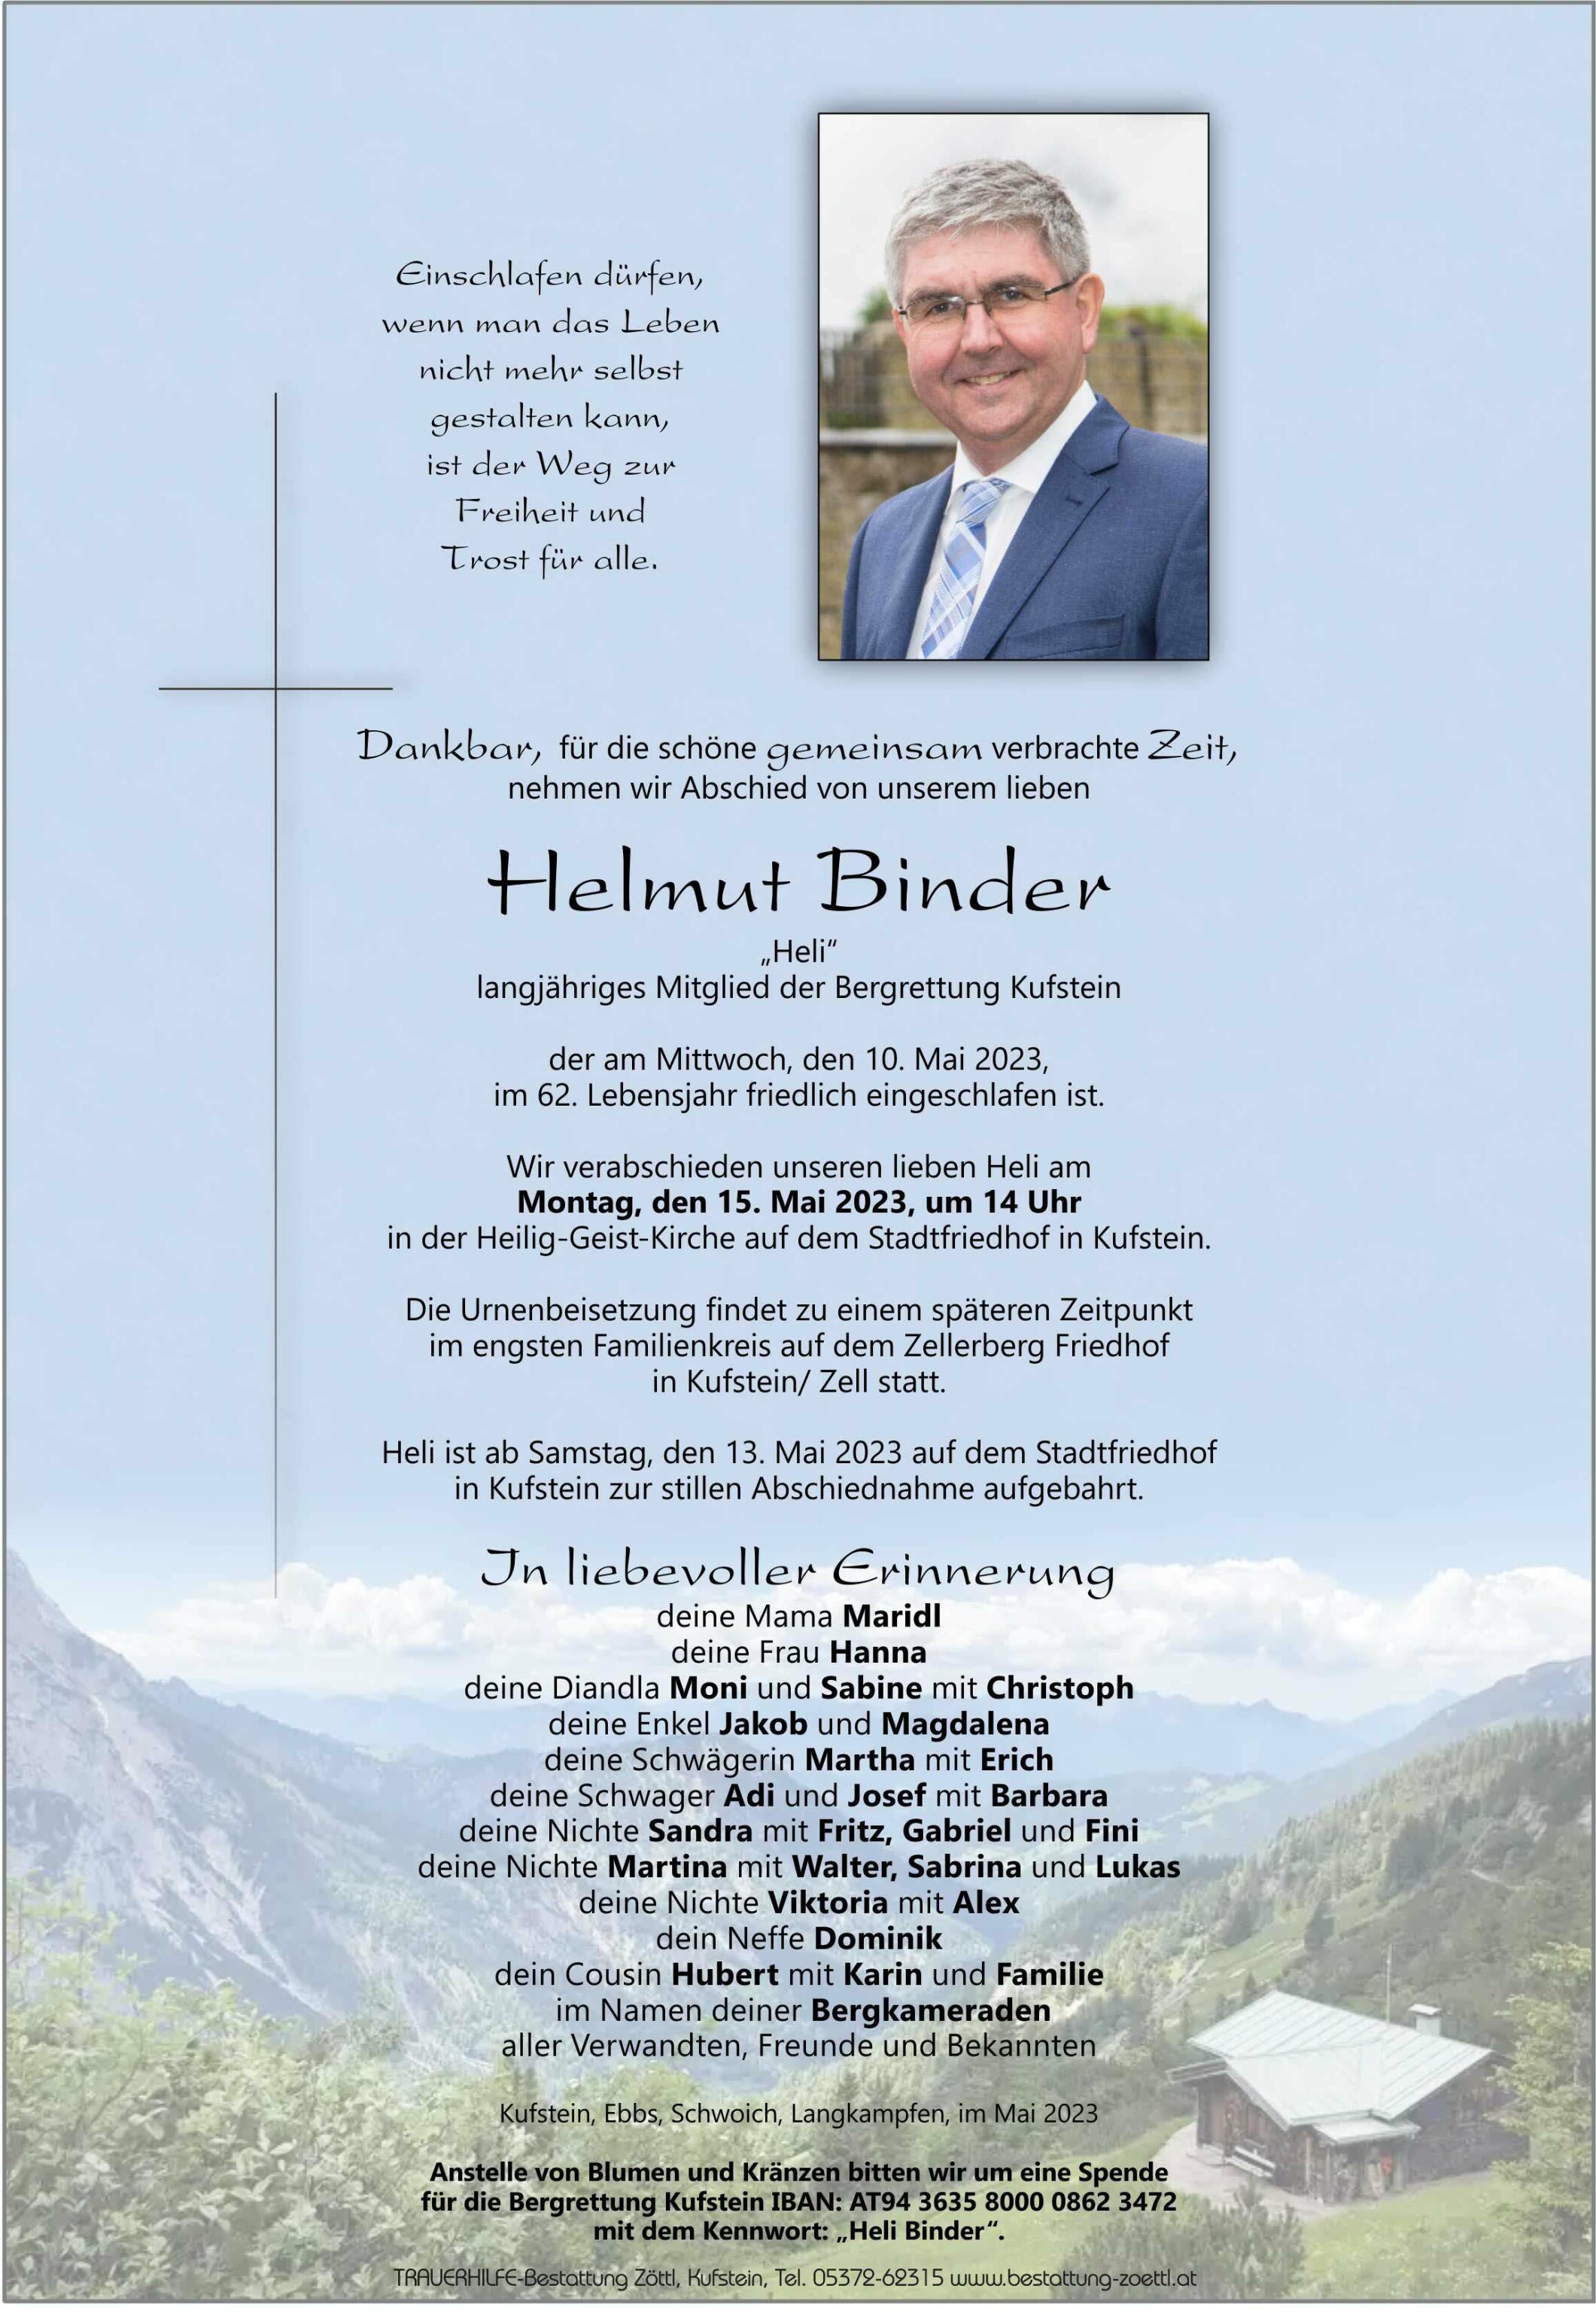 Helmut Binder